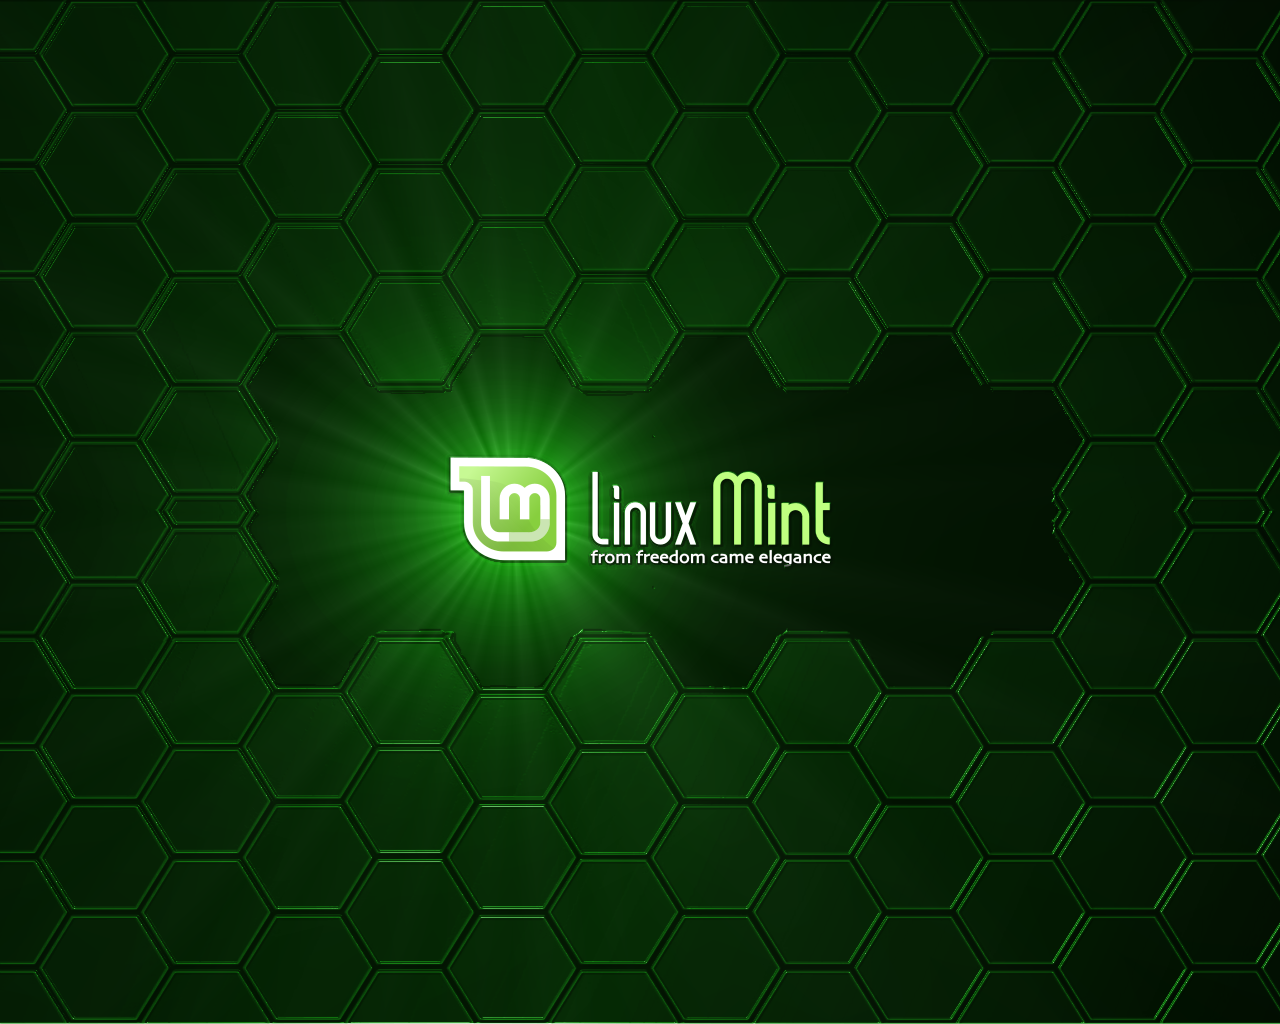 Cambios que vendrn en Linux Mint 8 Helena Ubuntu ubuntu y mas